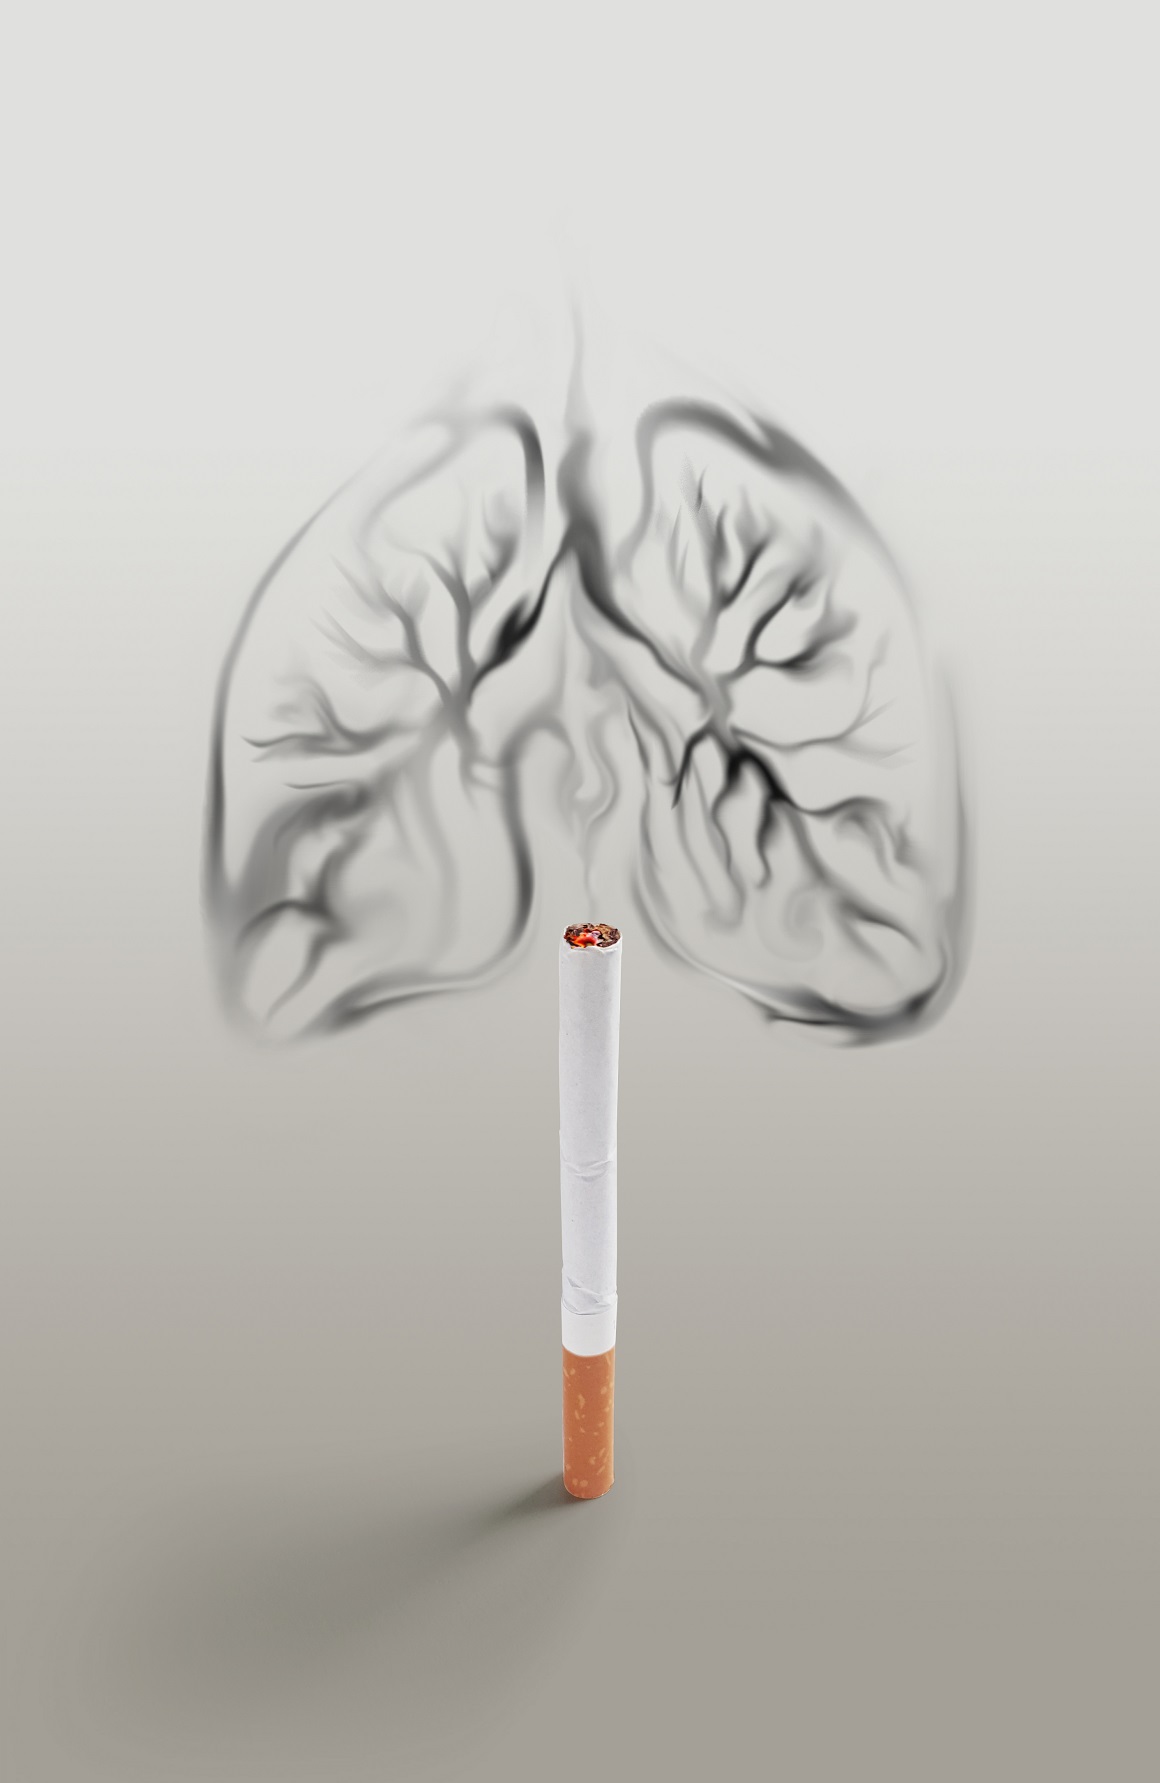 Kancerogeni u duhanskom dimu glavni su identificirani uzroci raka kod ljudi